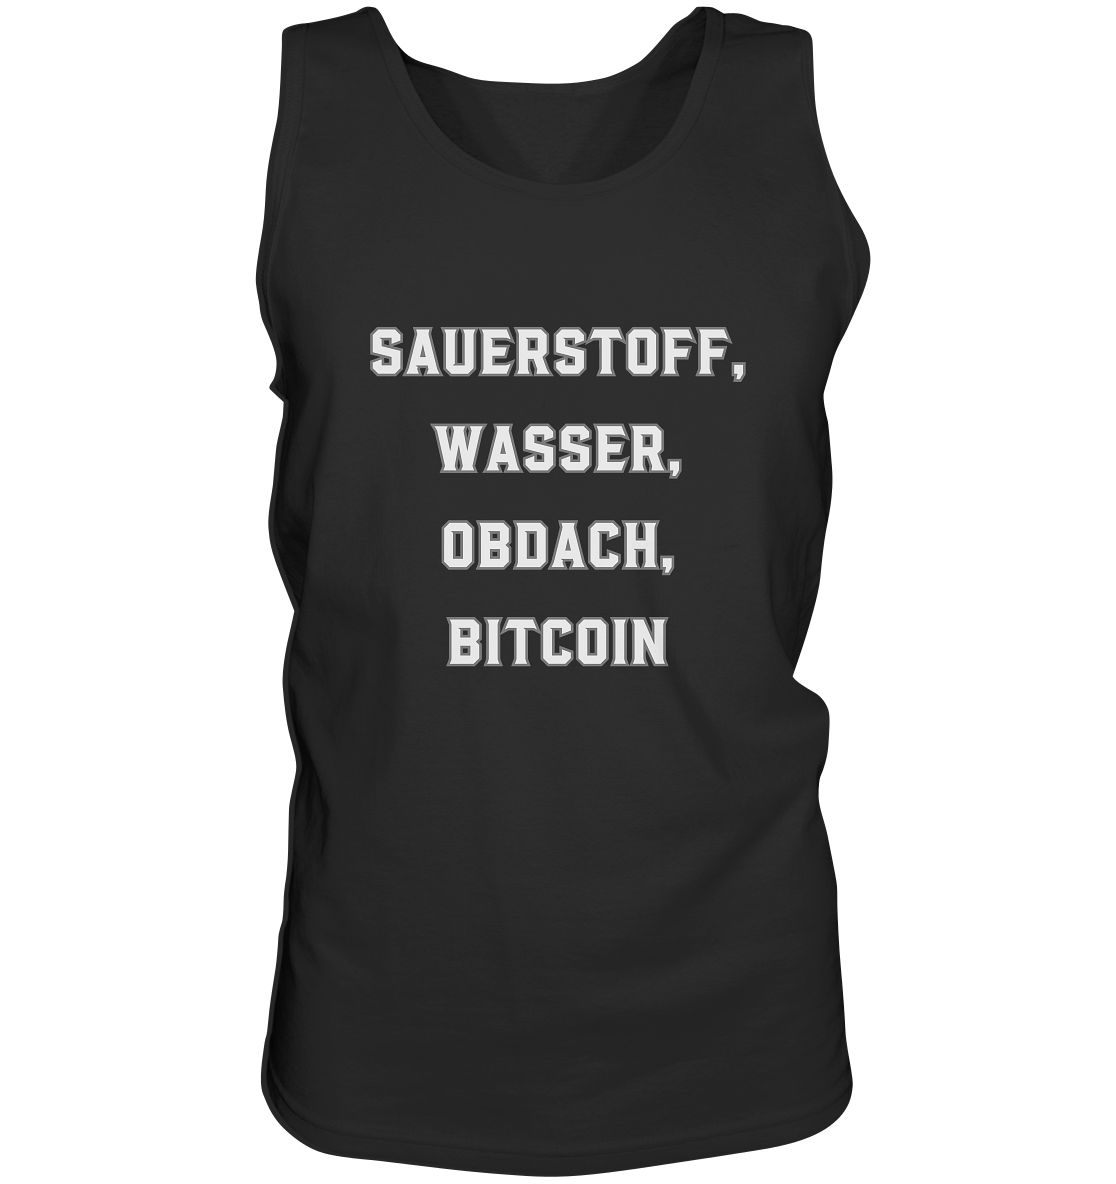 SAUERSTOFF, WASSER, OBDACH, BITCOIN - Tank-Top